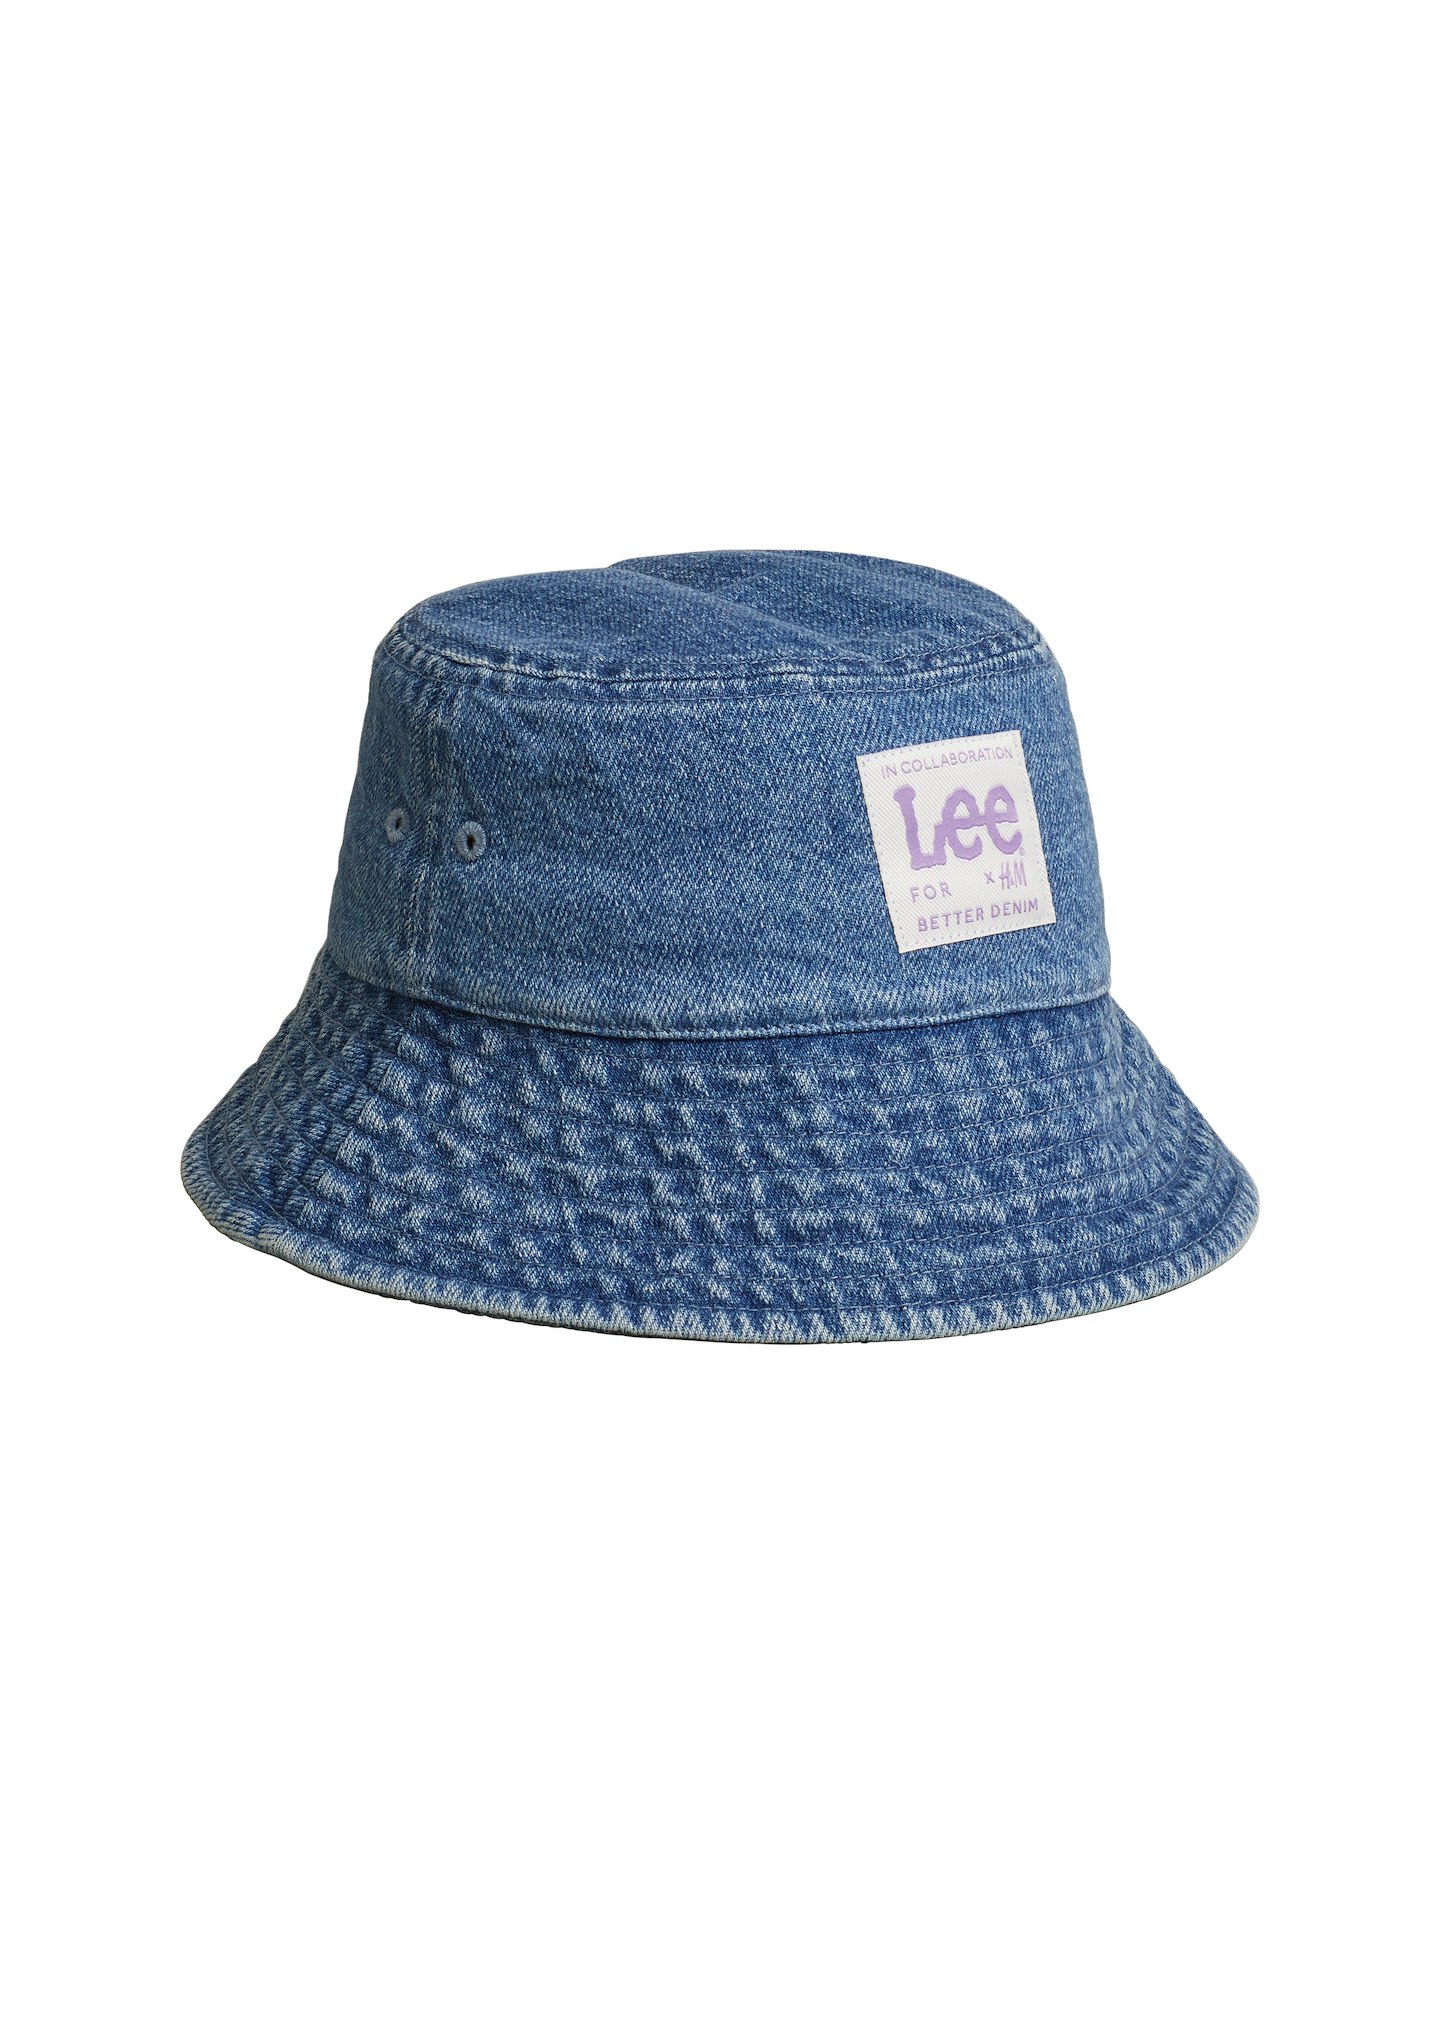 Lee X H&M, Denim Bucket Hat, £9.99